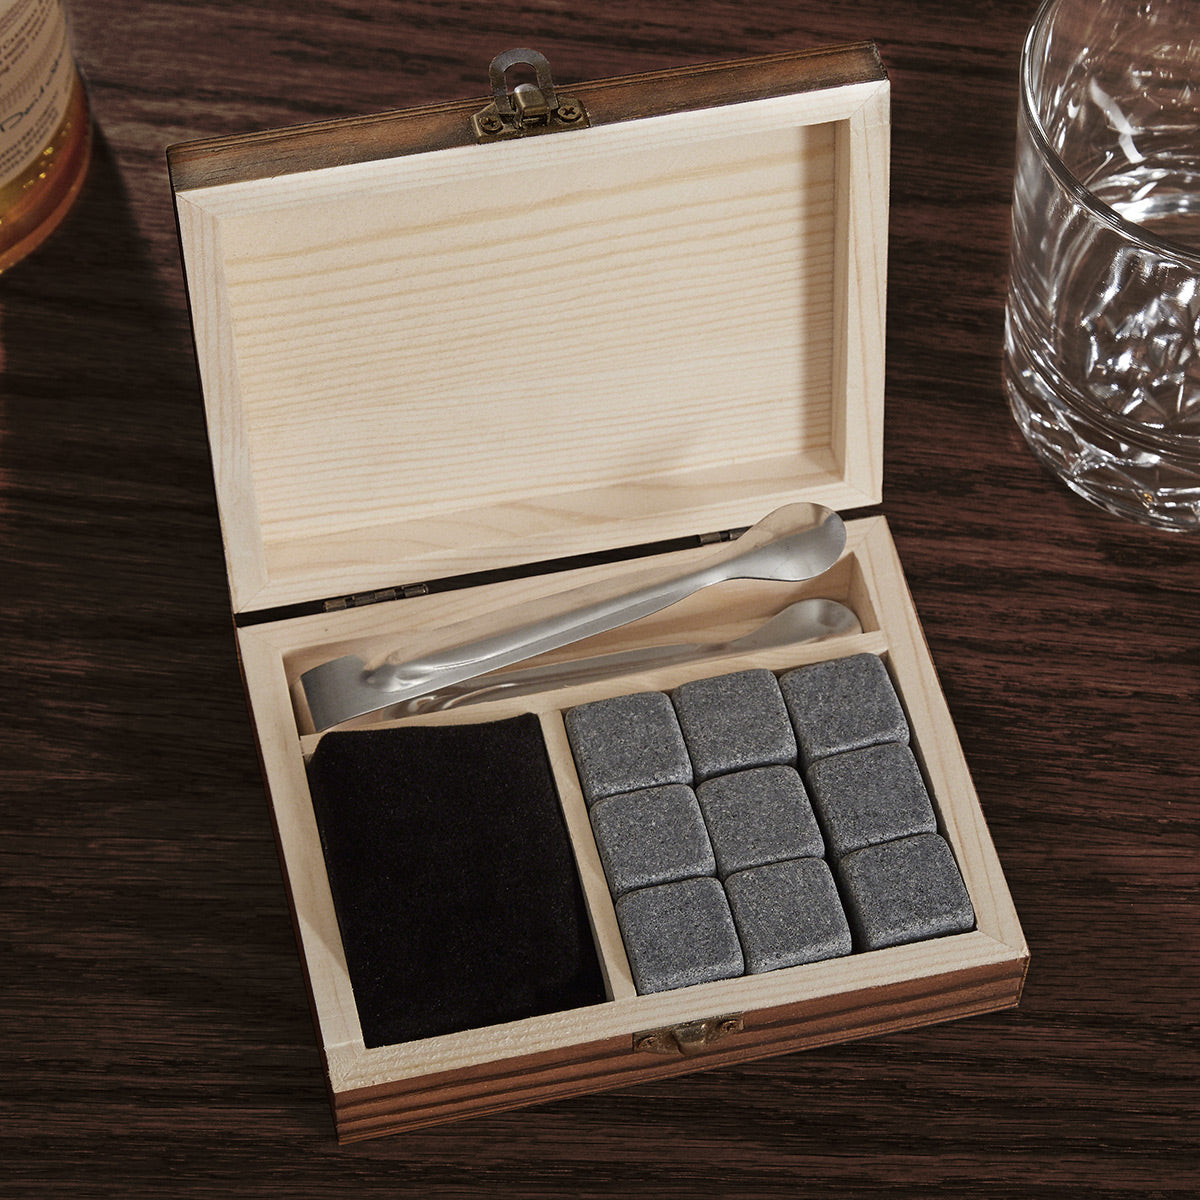 Engraved Whiskey Stones & Glasses - Pharmacist Gift Set